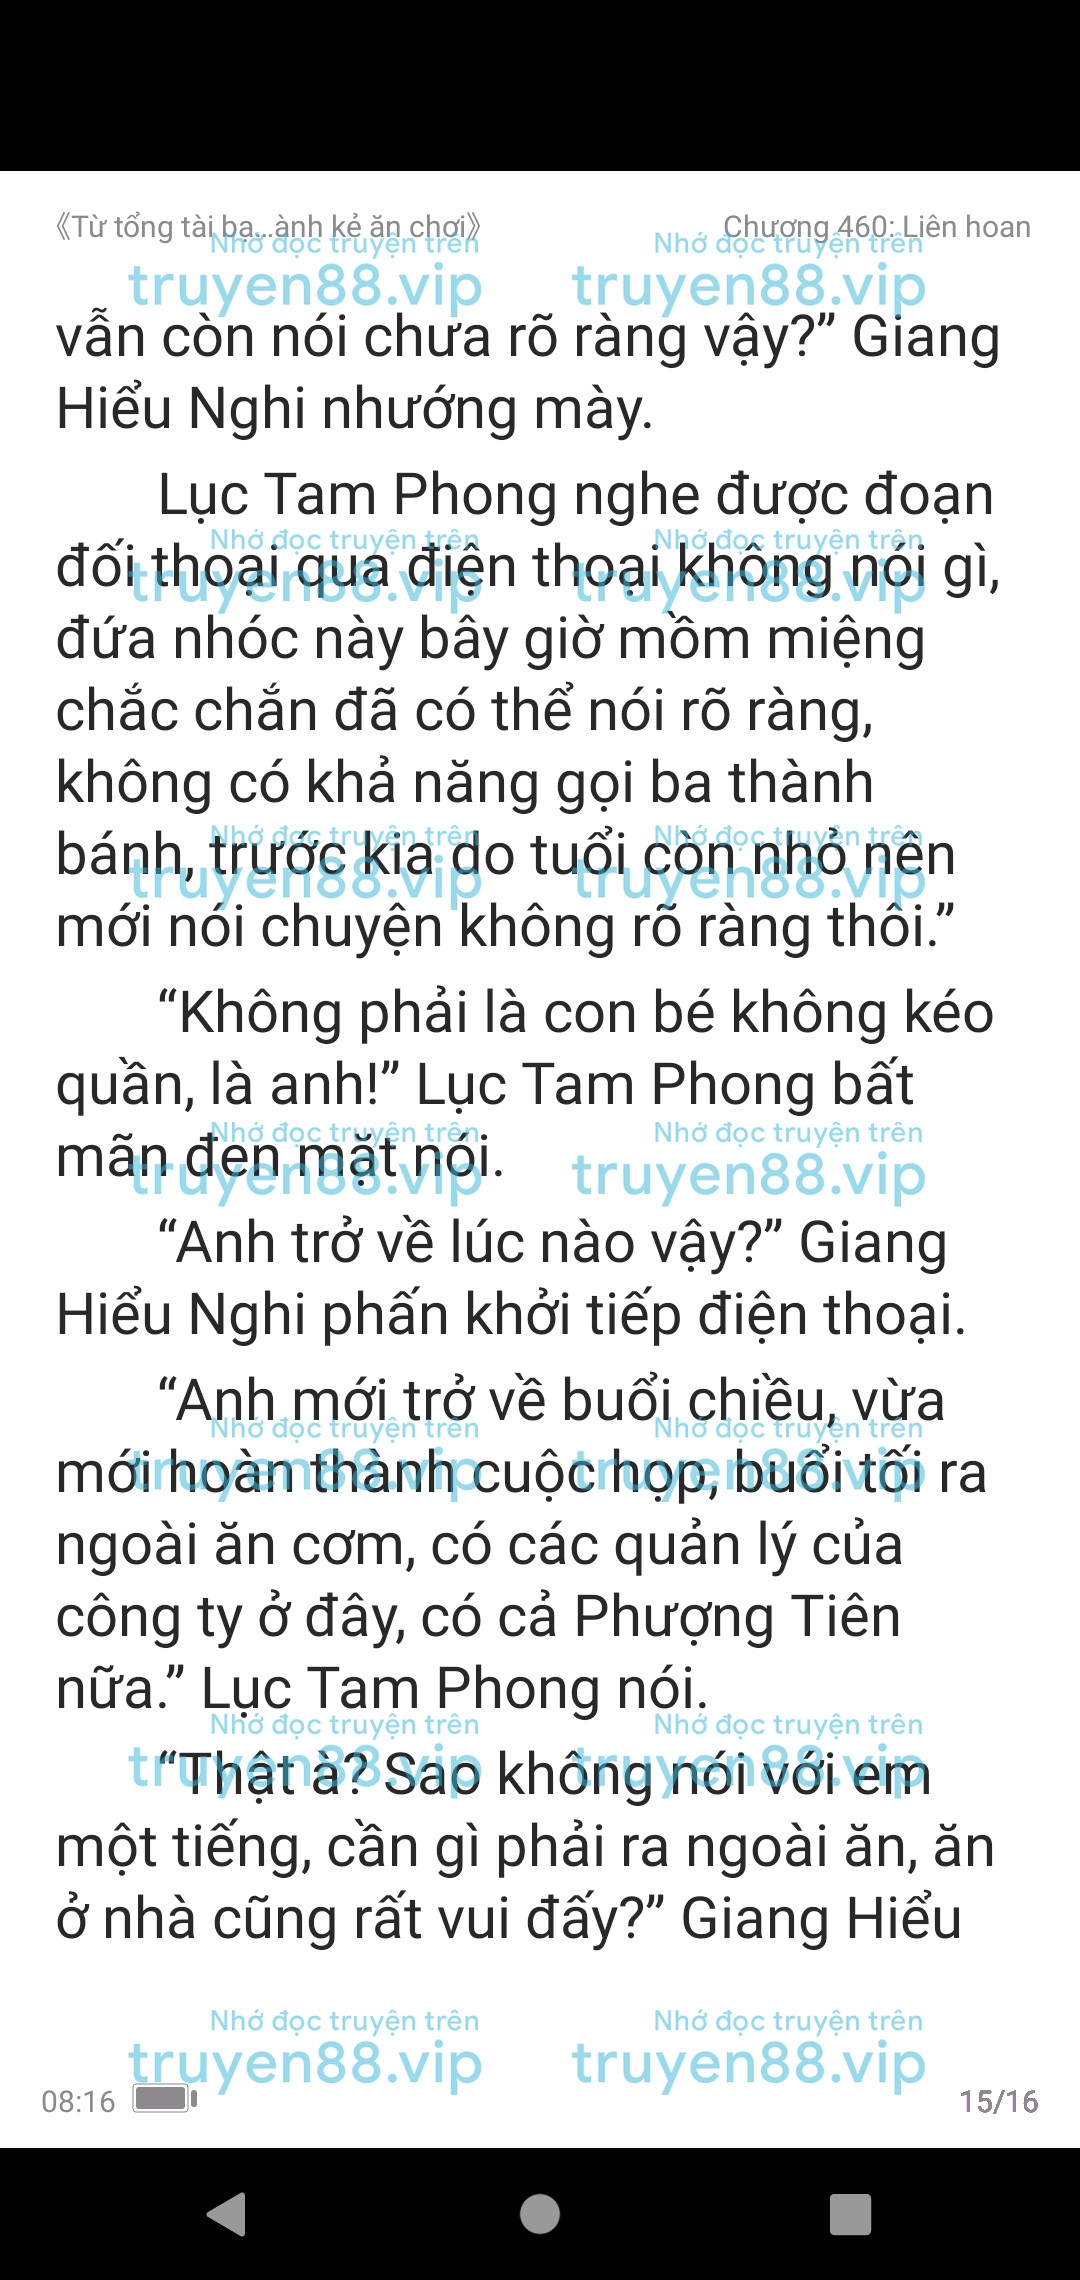 ke-an-choi-bien-tong-tai-460-1